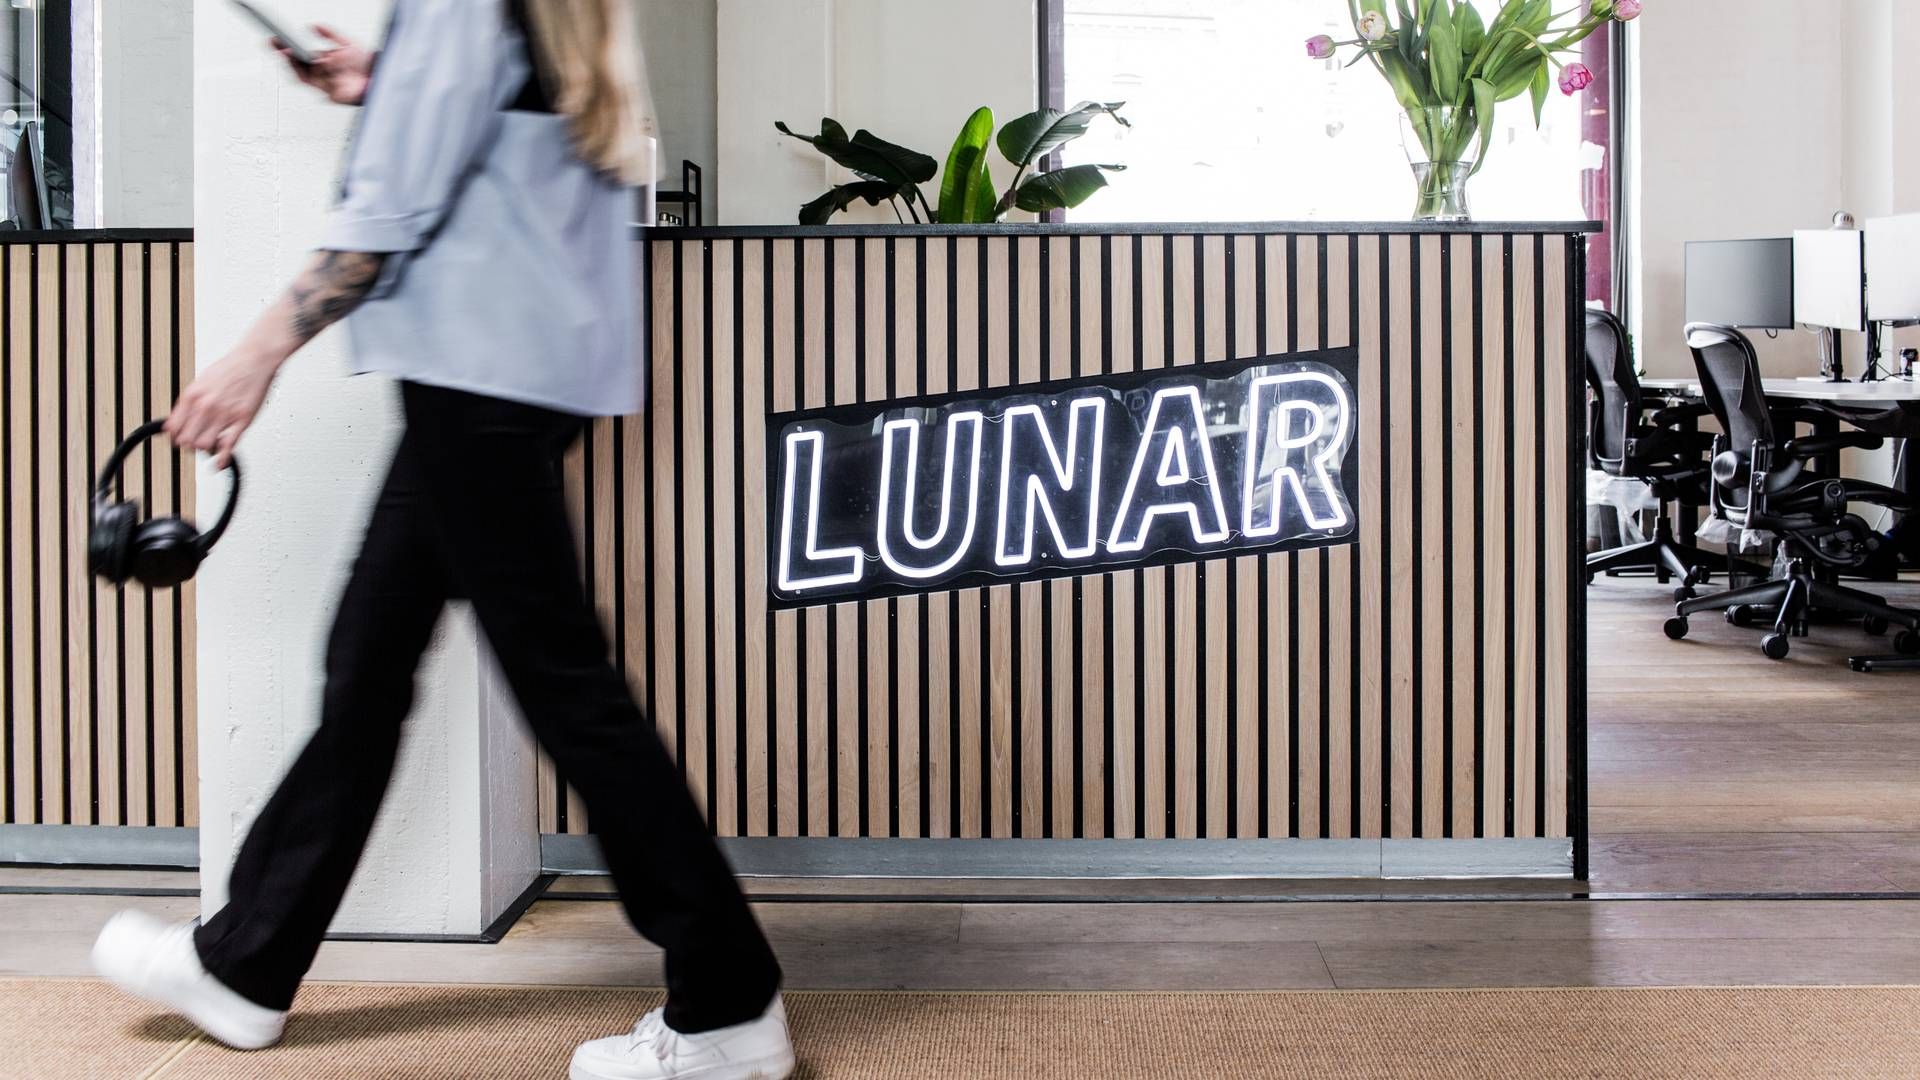 Lunar er havnet i problemer med sit opkøb af norske Instabank, som ikke ser ud til at falde på plads til en tidligere aftalt deadline. | Foto: PR/Lunar Bank